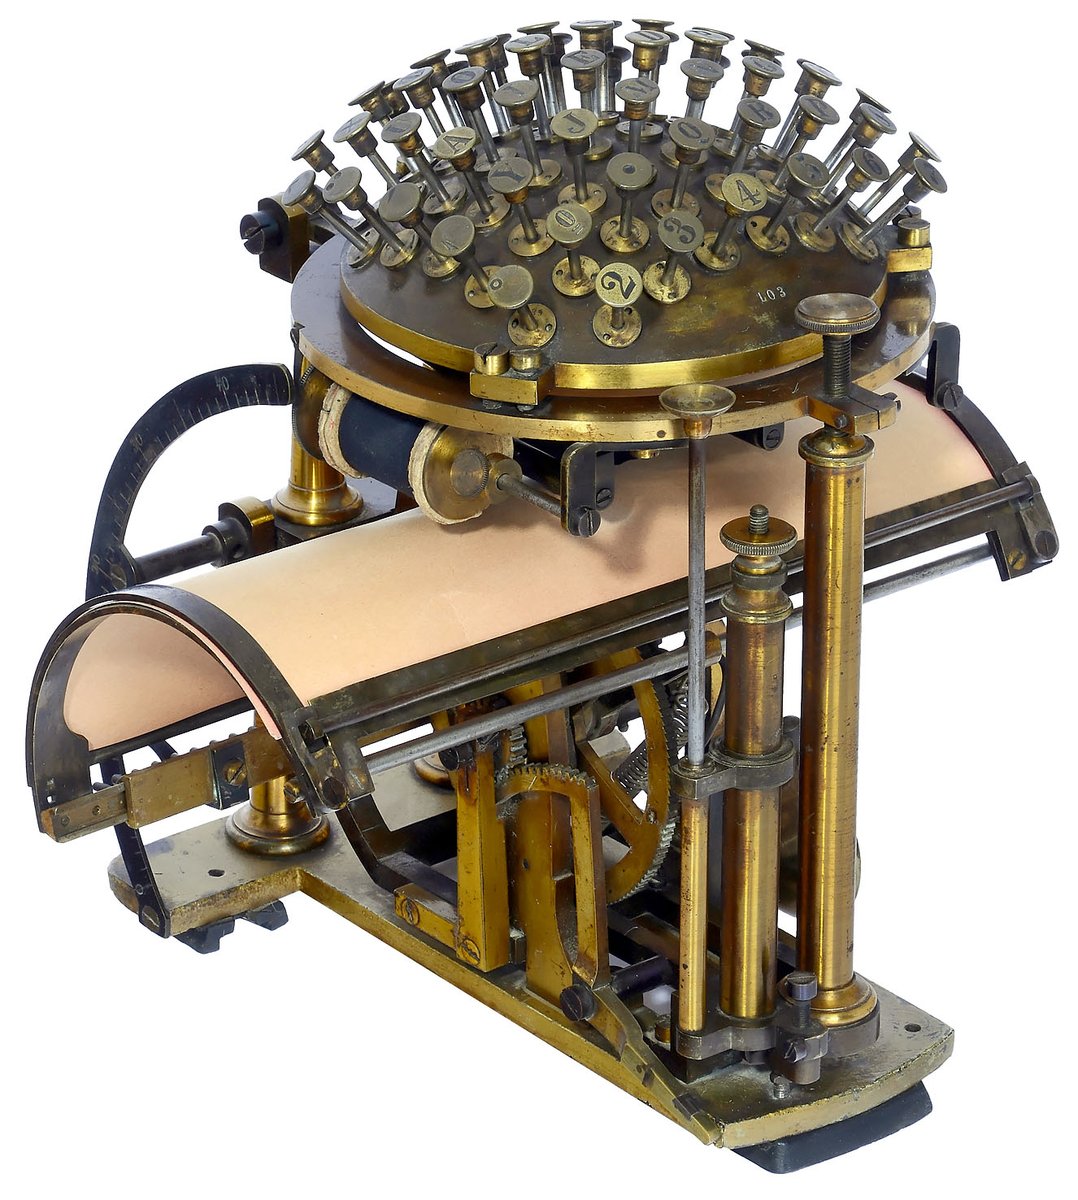 Hiroko Miyamoto 世界で初めて商業生産されたタイプライター ライティングボール スチームパンクなデザインでかっこいい デンマークのラスムス マリング ハンセンによって1865年制作されました Malling Hansen T Co Ywwjtqmp6d T Co